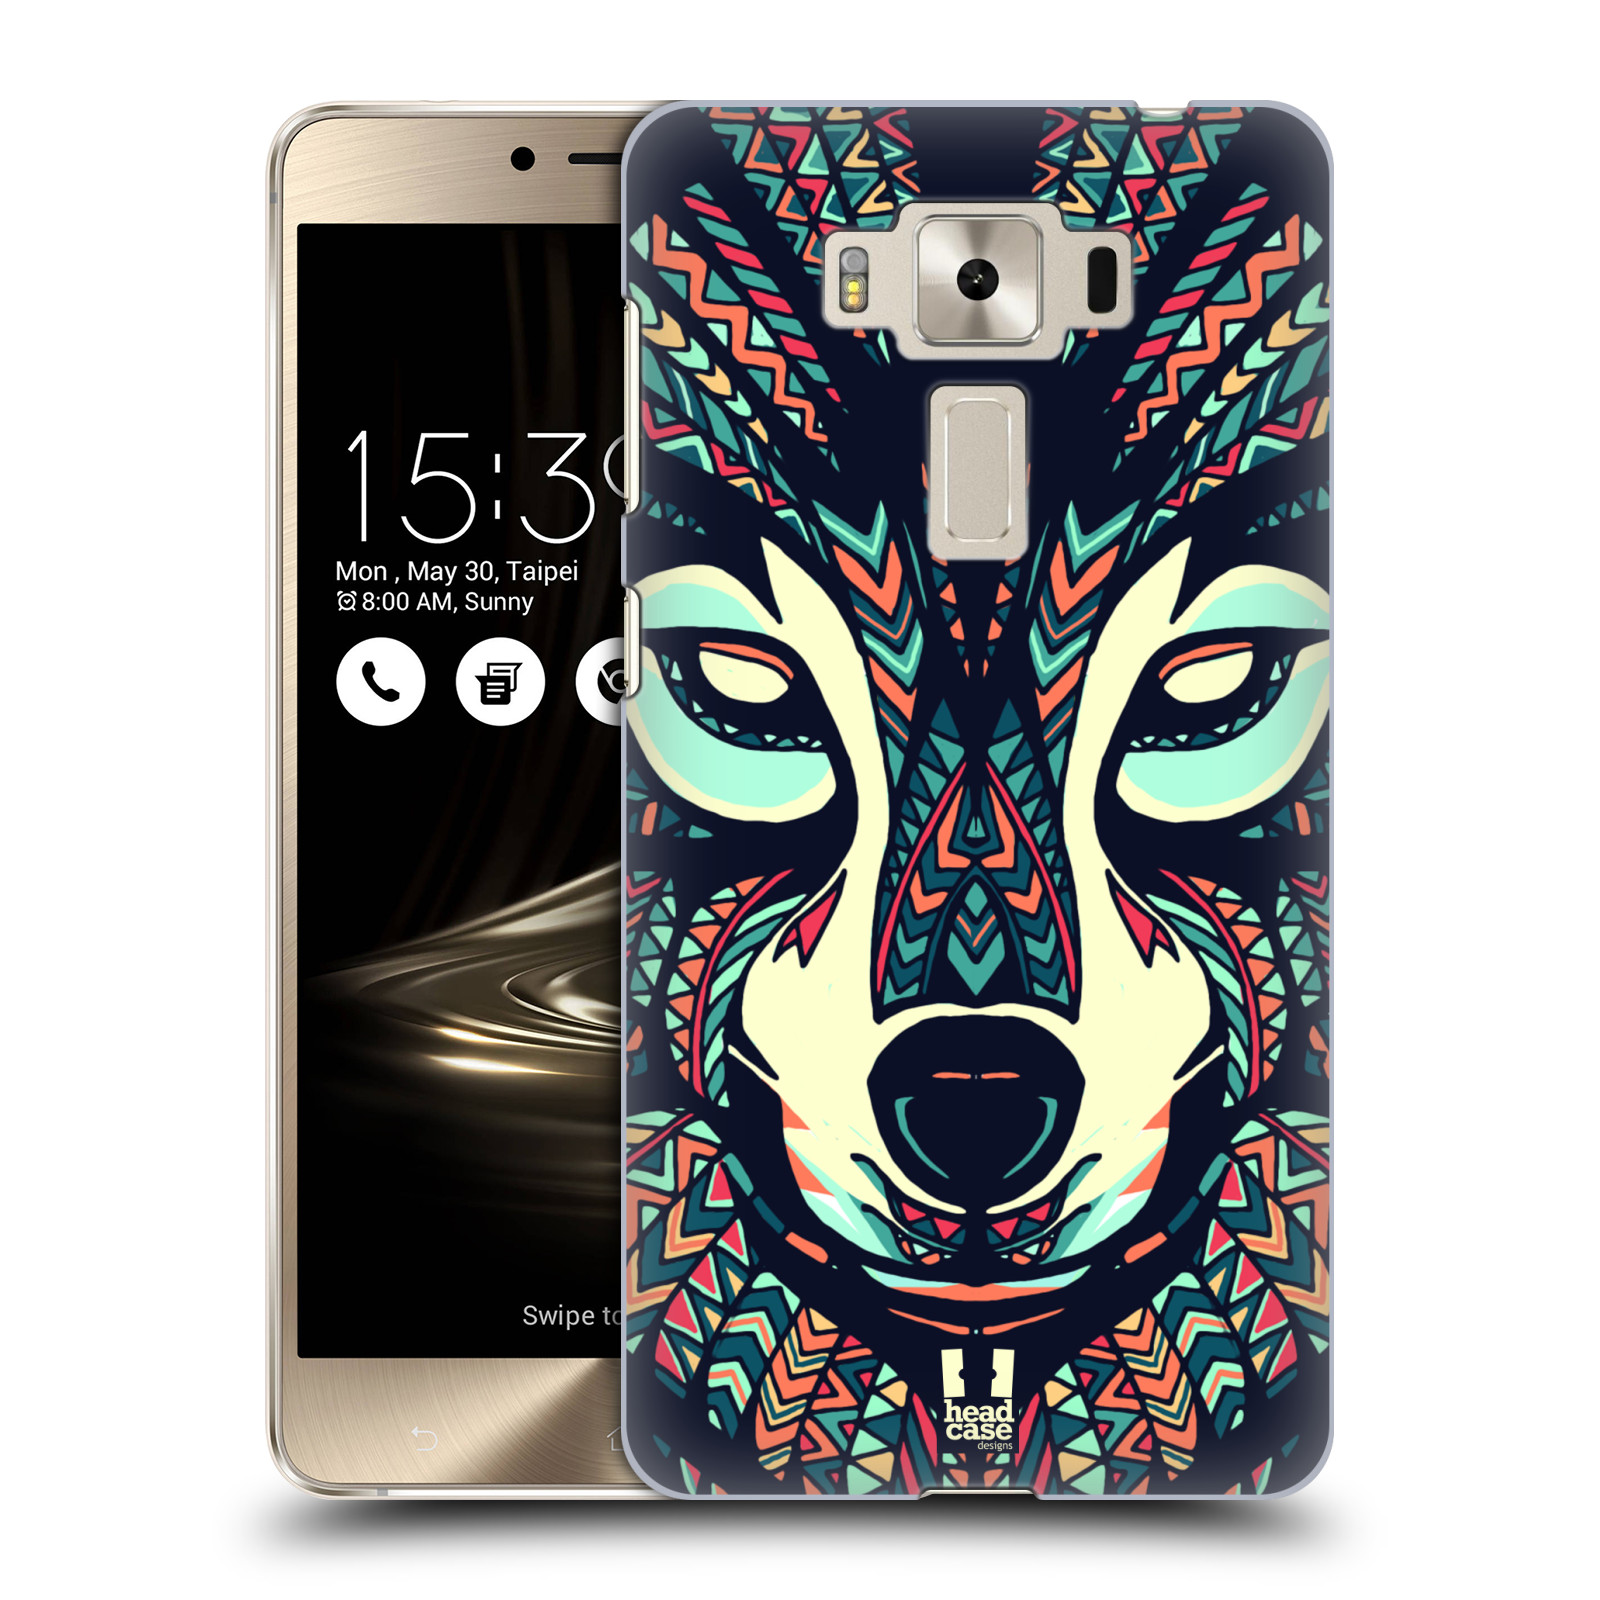 HEAD CASE plastový obal na mobil Asus Zenfone 3 DELUXE ZS550KL vzor Aztécký motiv zvíře 3 vlk